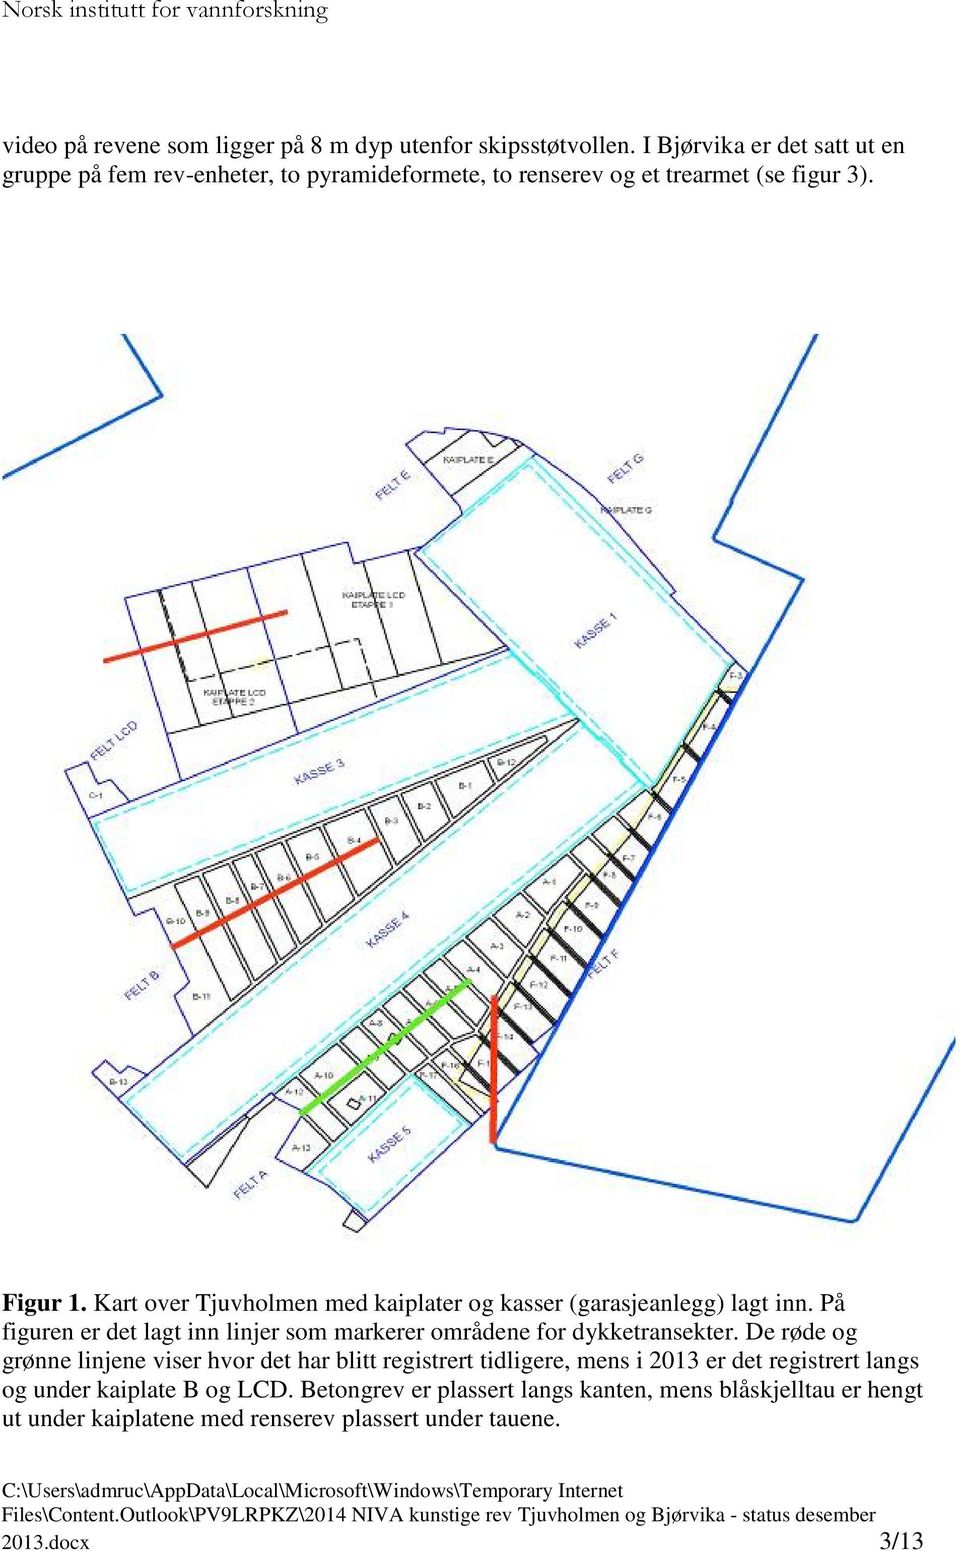 Kart over Tjuvholmen med kaiplater og kasser (garasjeanlegg) lagt inn. På figuren er det lagt inn linjer som markerer områdene for dykketransekter.